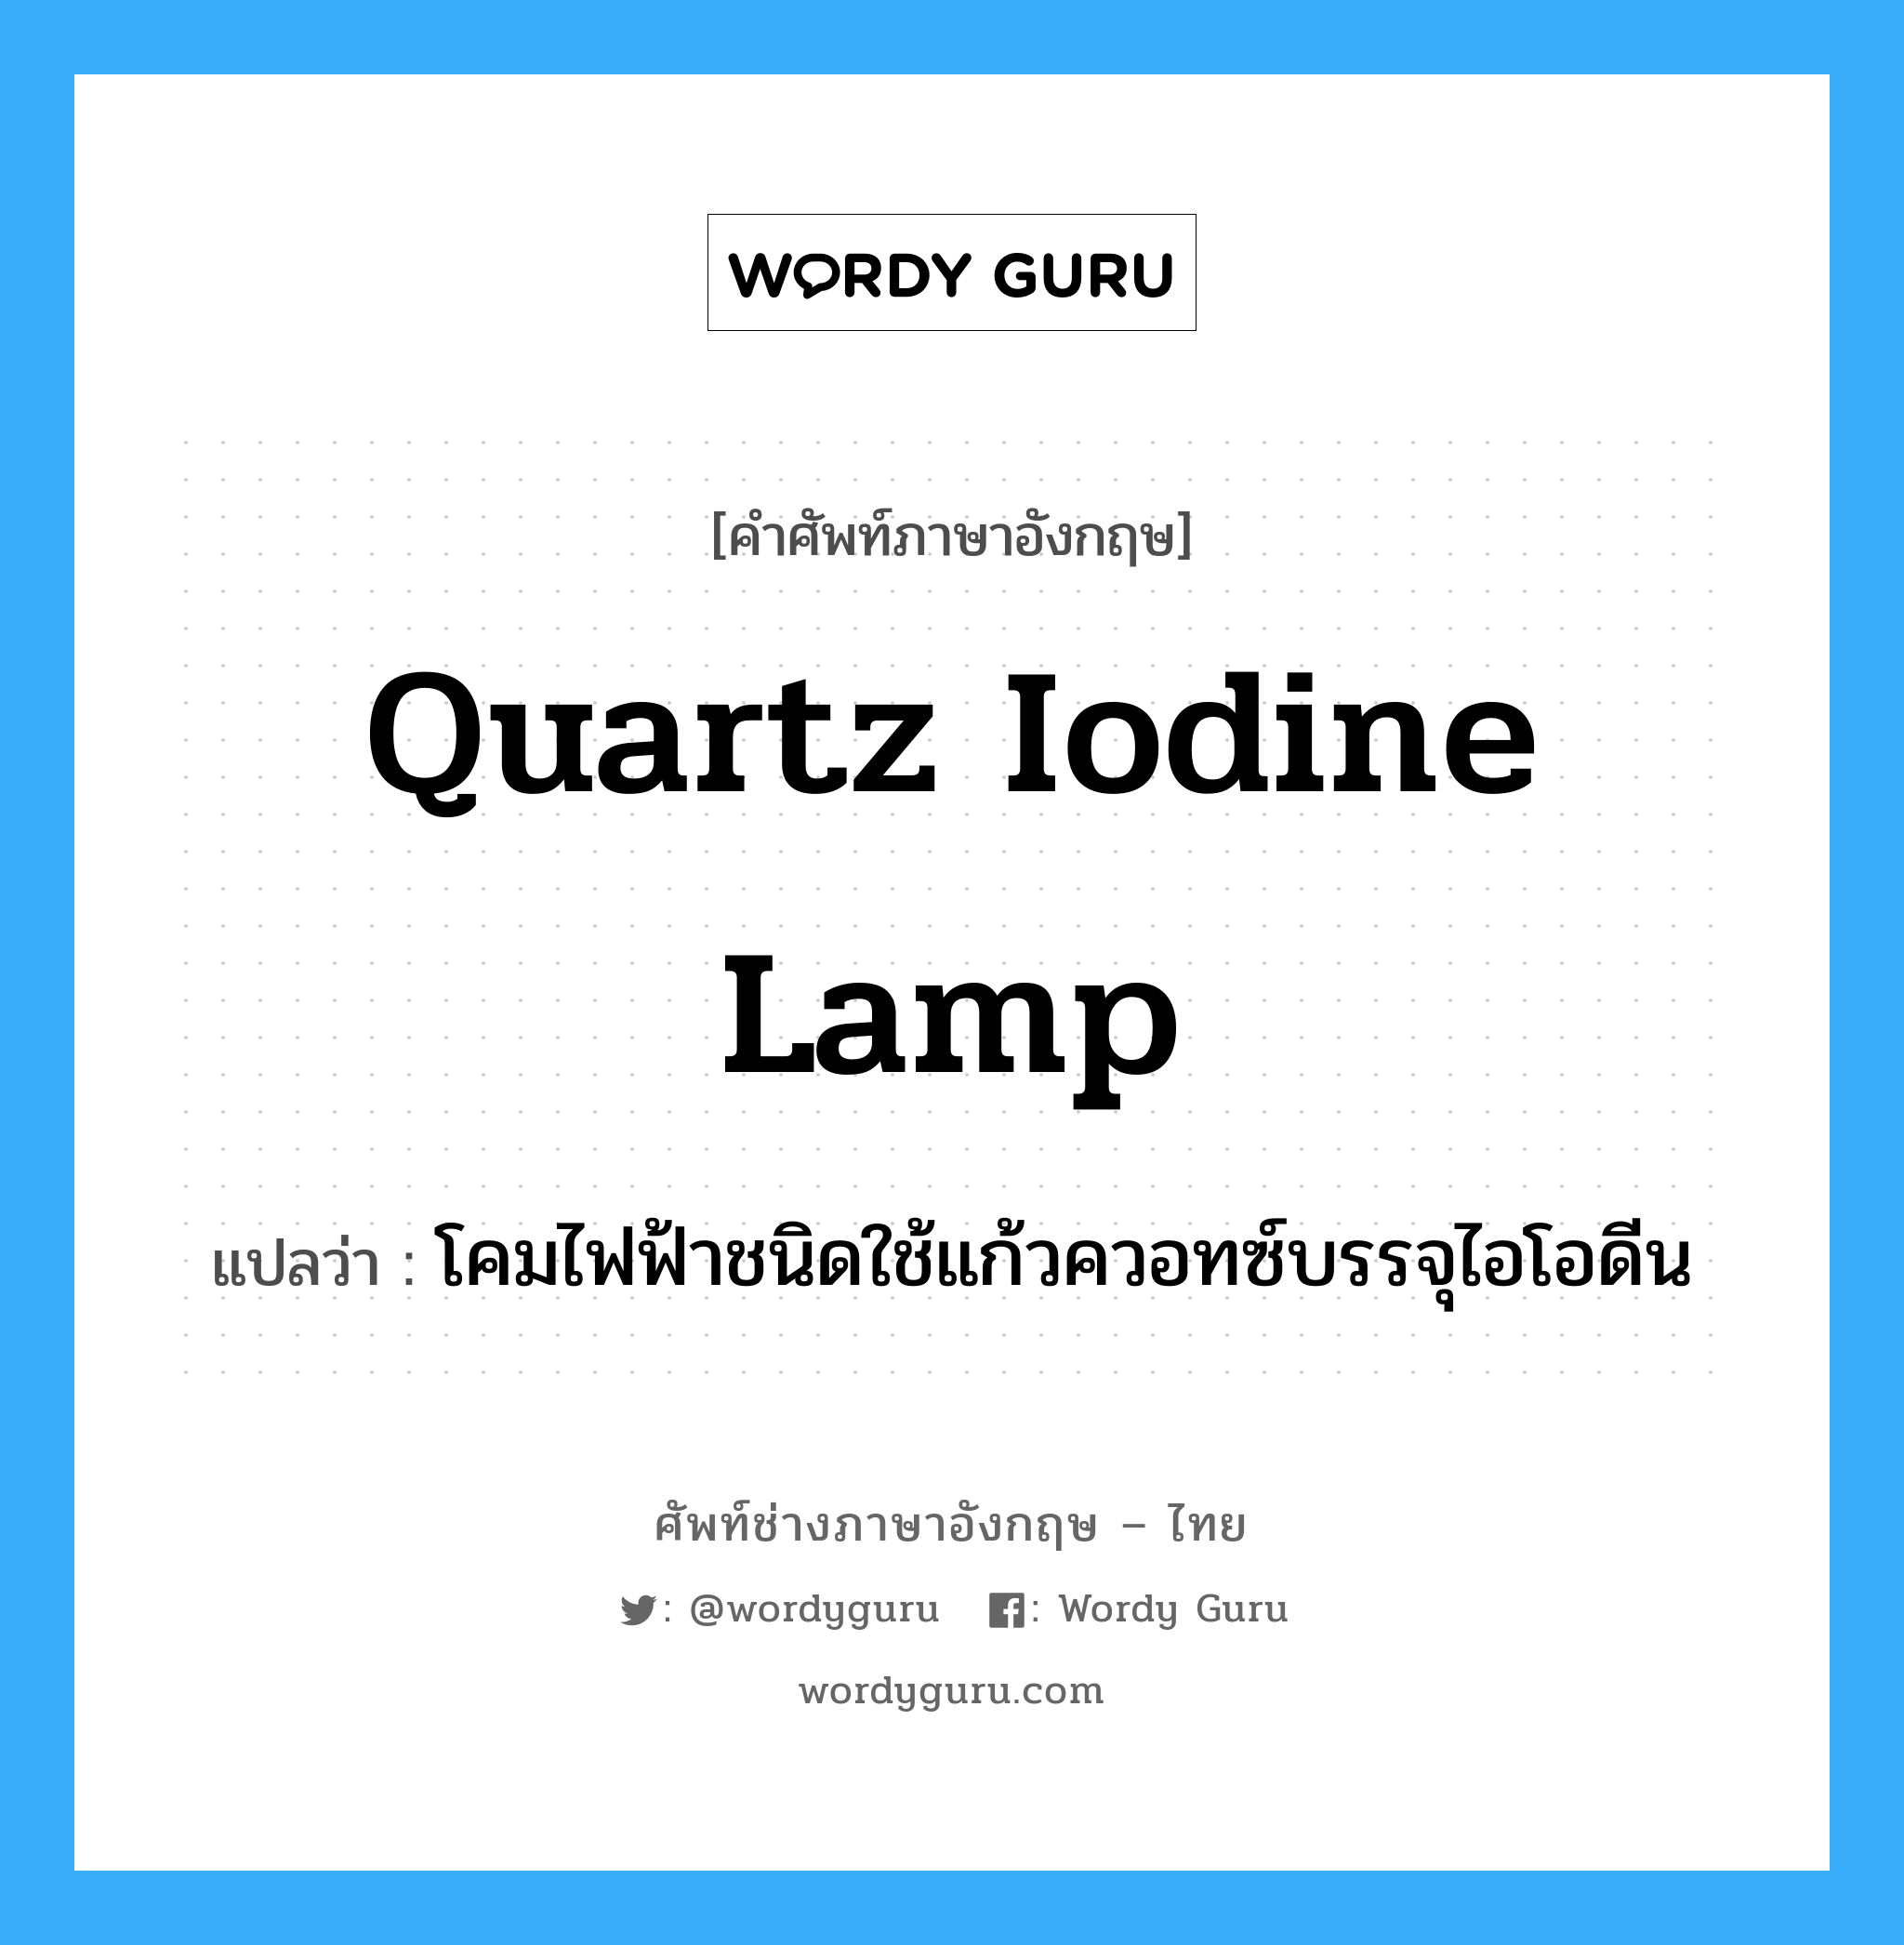 quartz iodine lamp แปลว่า?, คำศัพท์ช่างภาษาอังกฤษ - ไทย quartz iodine lamp คำศัพท์ภาษาอังกฤษ quartz iodine lamp แปลว่า โคมไฟฟ้าชนิดใช้แก้วควอทซ์บรรจุไอโอดีน